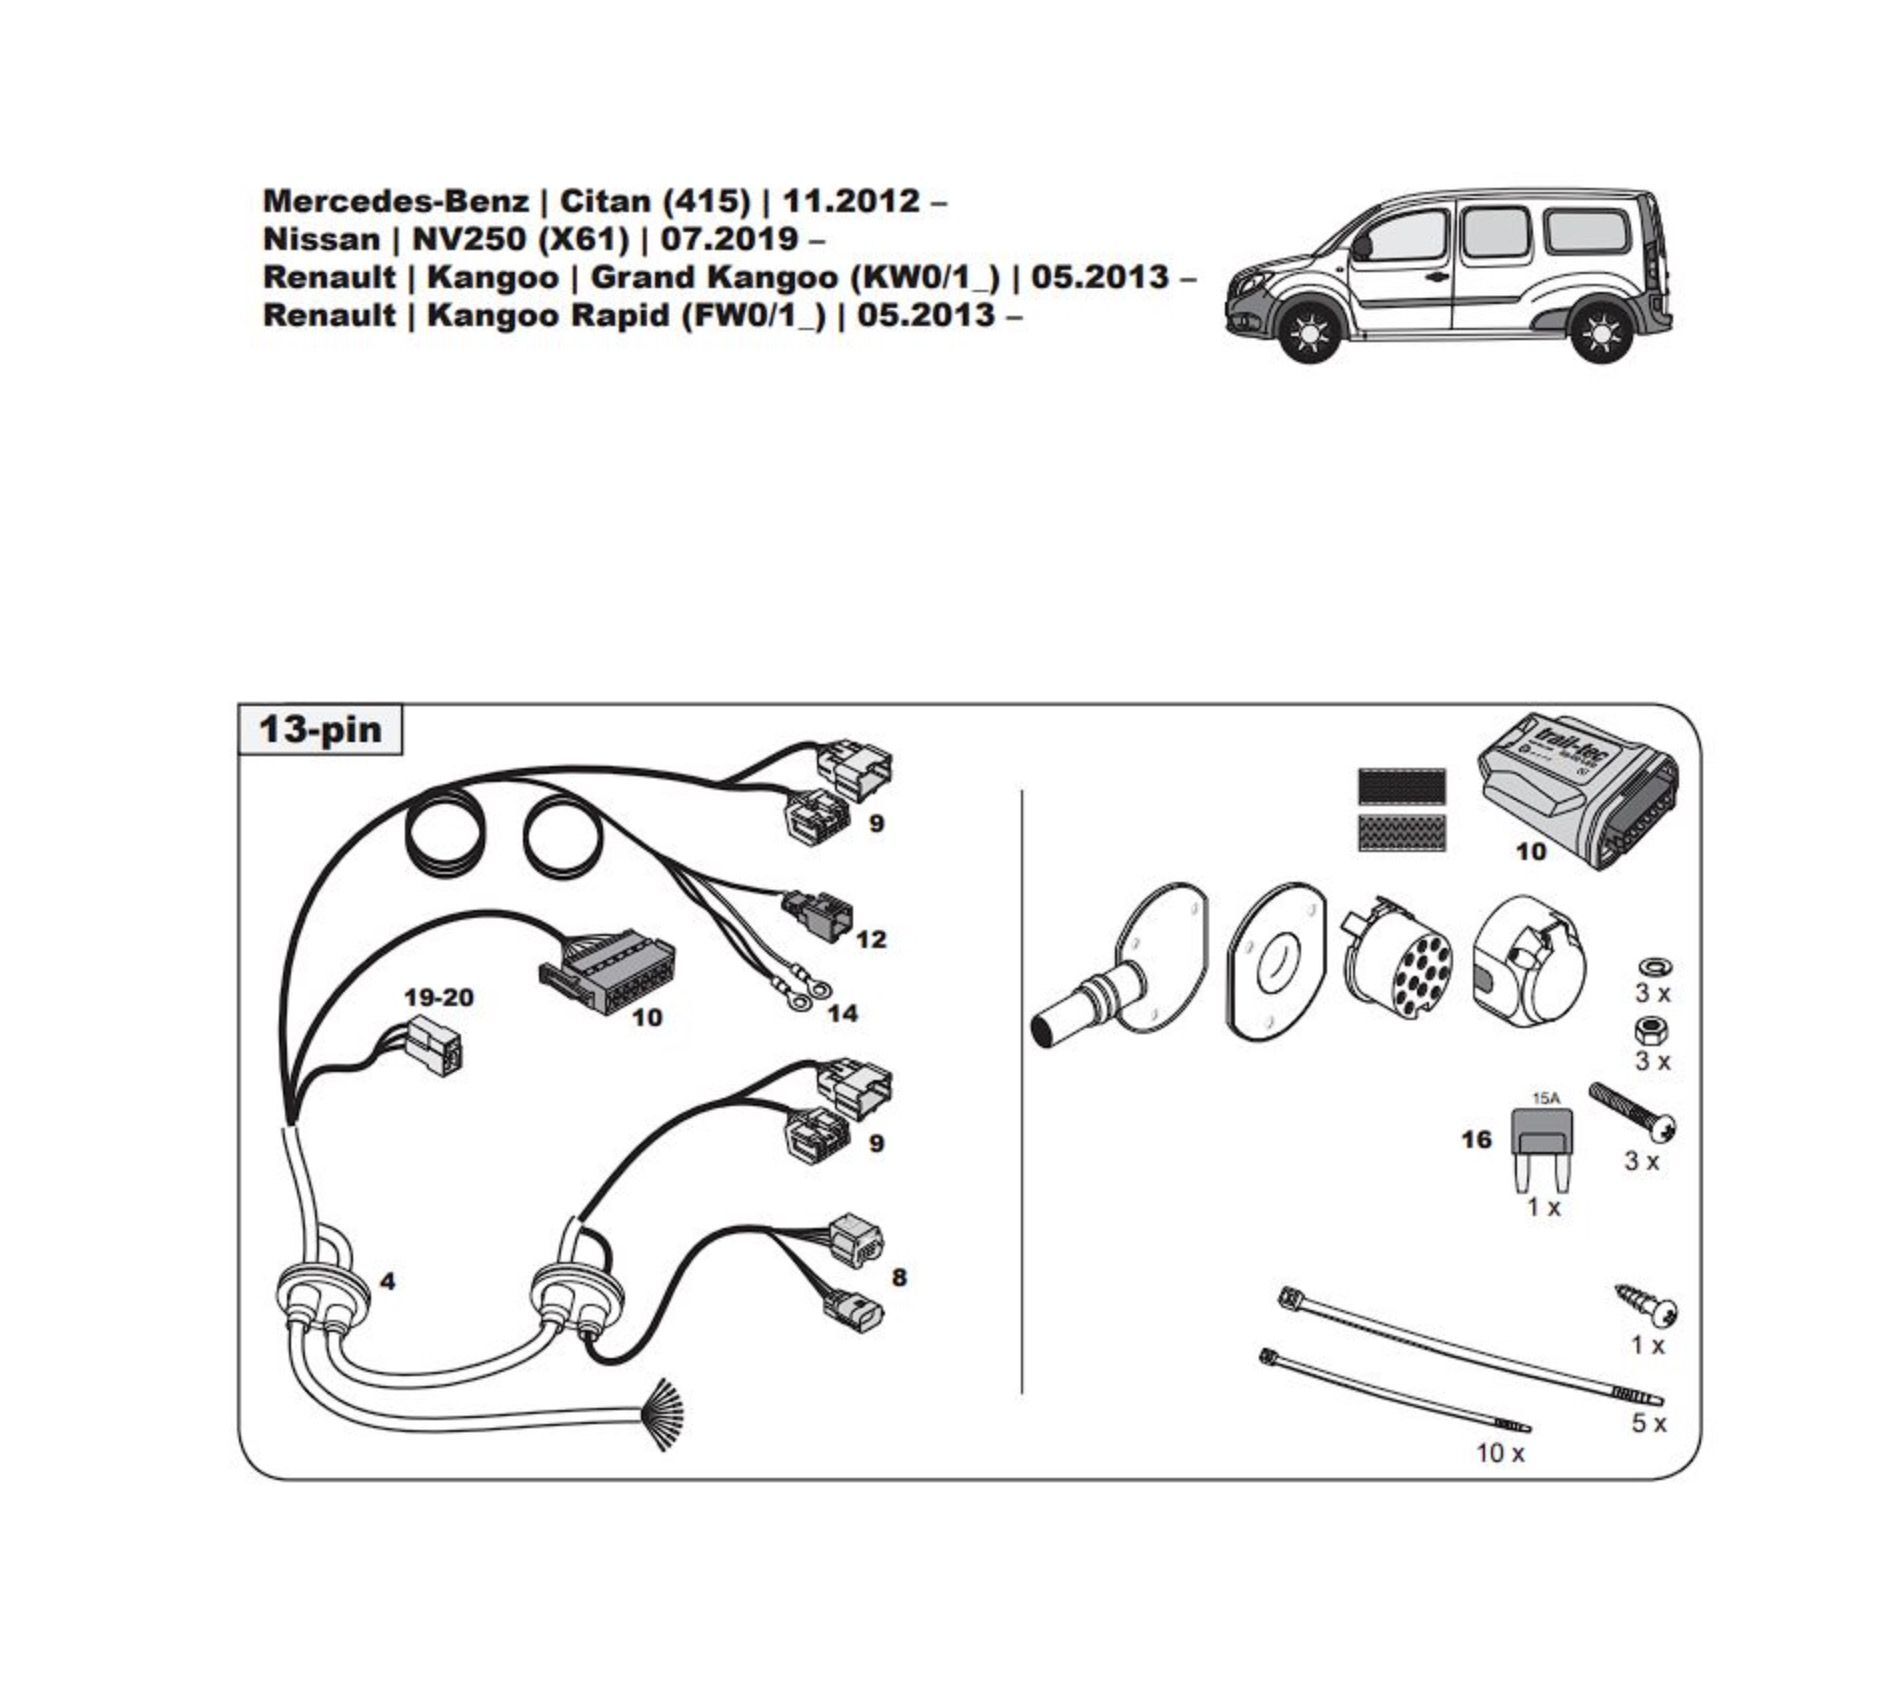 Штатная электрика для фаркопа с розеткой 13-pin, для Mercedes-Benz Citan WYR322613R (Trail